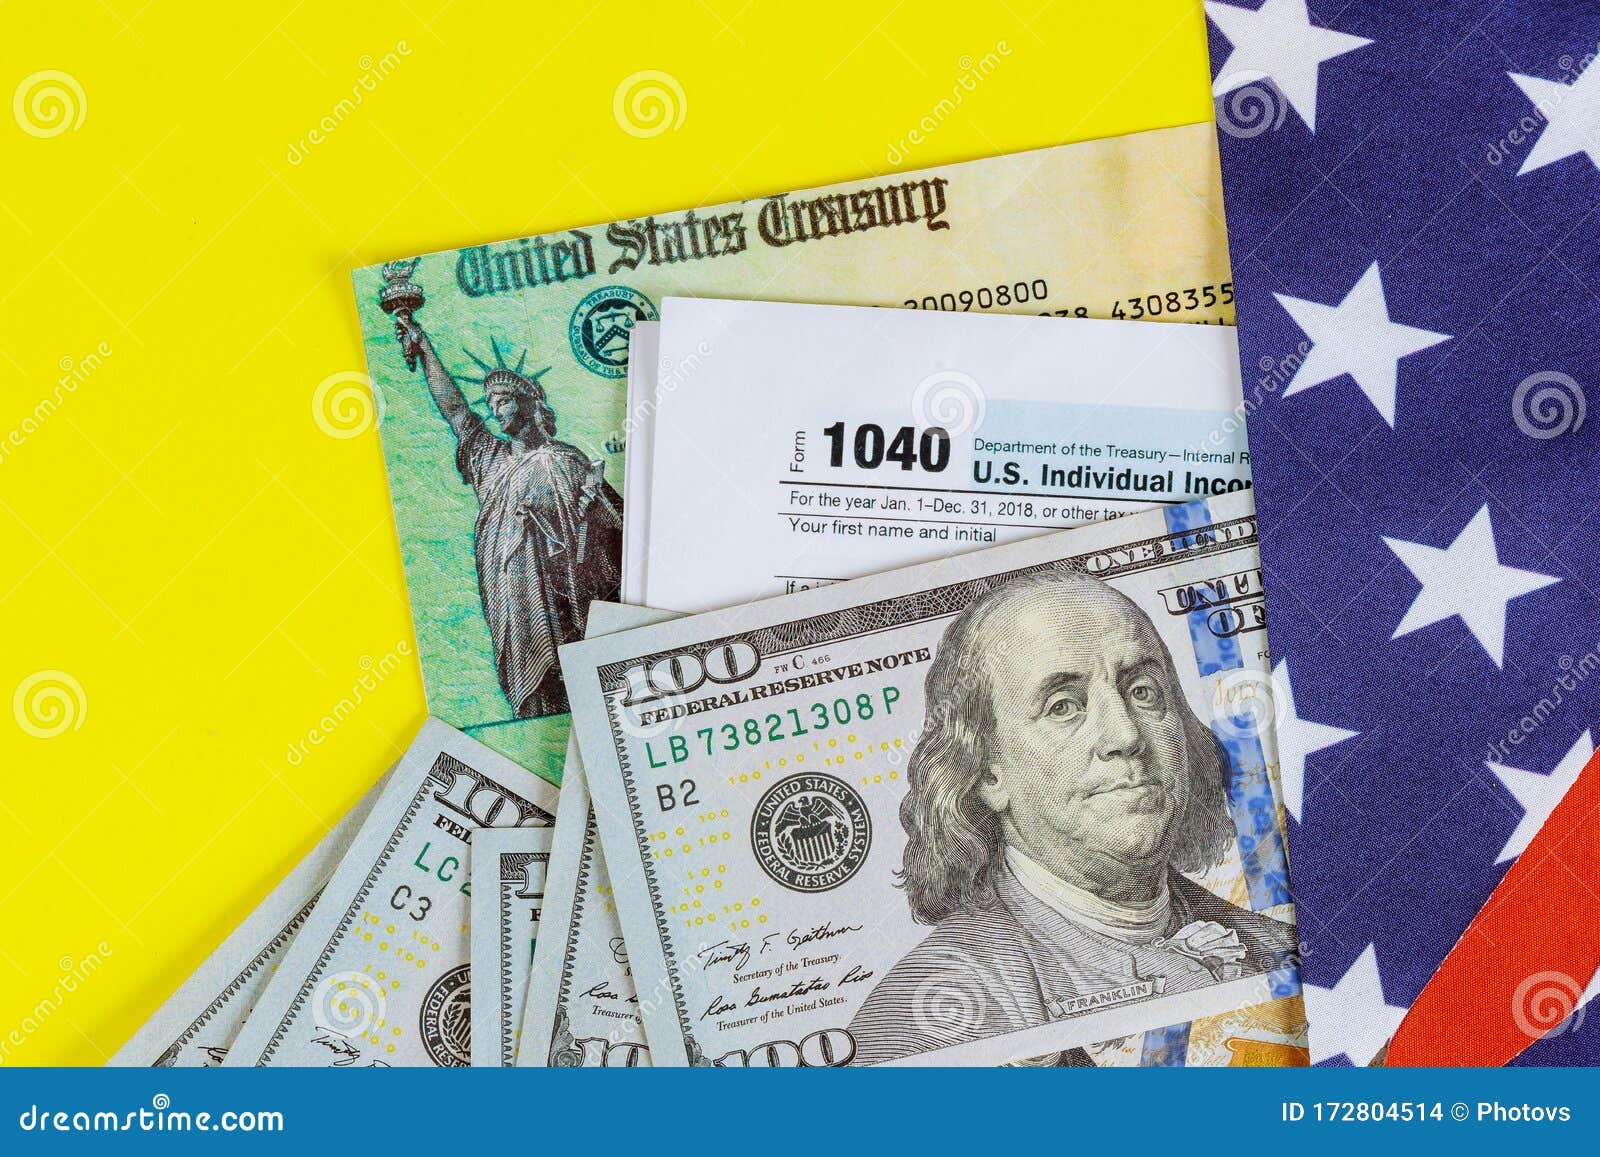 Imagem gratuita: Estados Unidos, notas de banco, em dinheiro, dinheiro,  americana, serviços bancários, Dólar, moeda, produto, criação